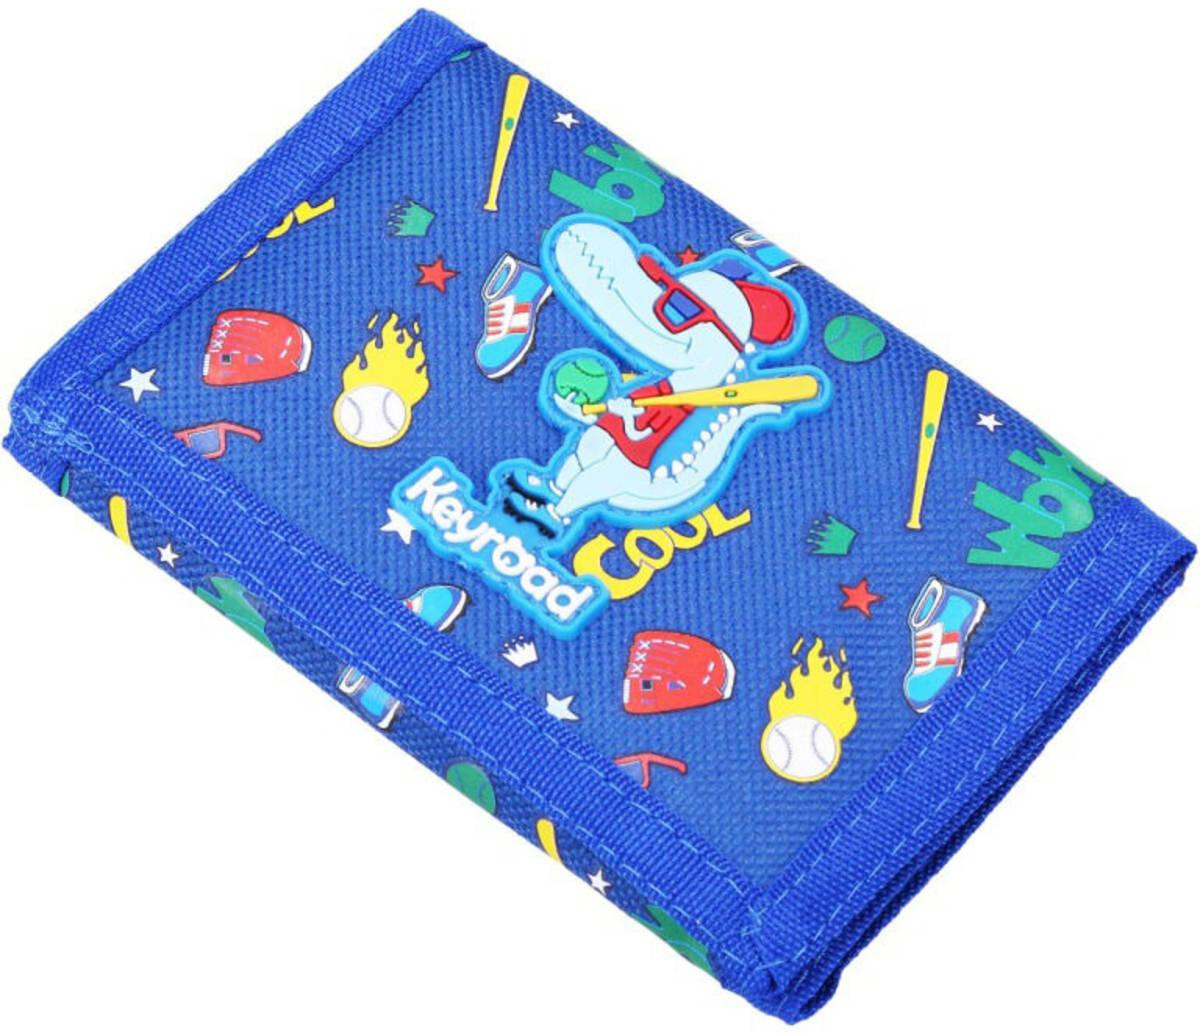 Peněženka dětská textilní rozkládací na suchý zip s obrázkem 2 druhy